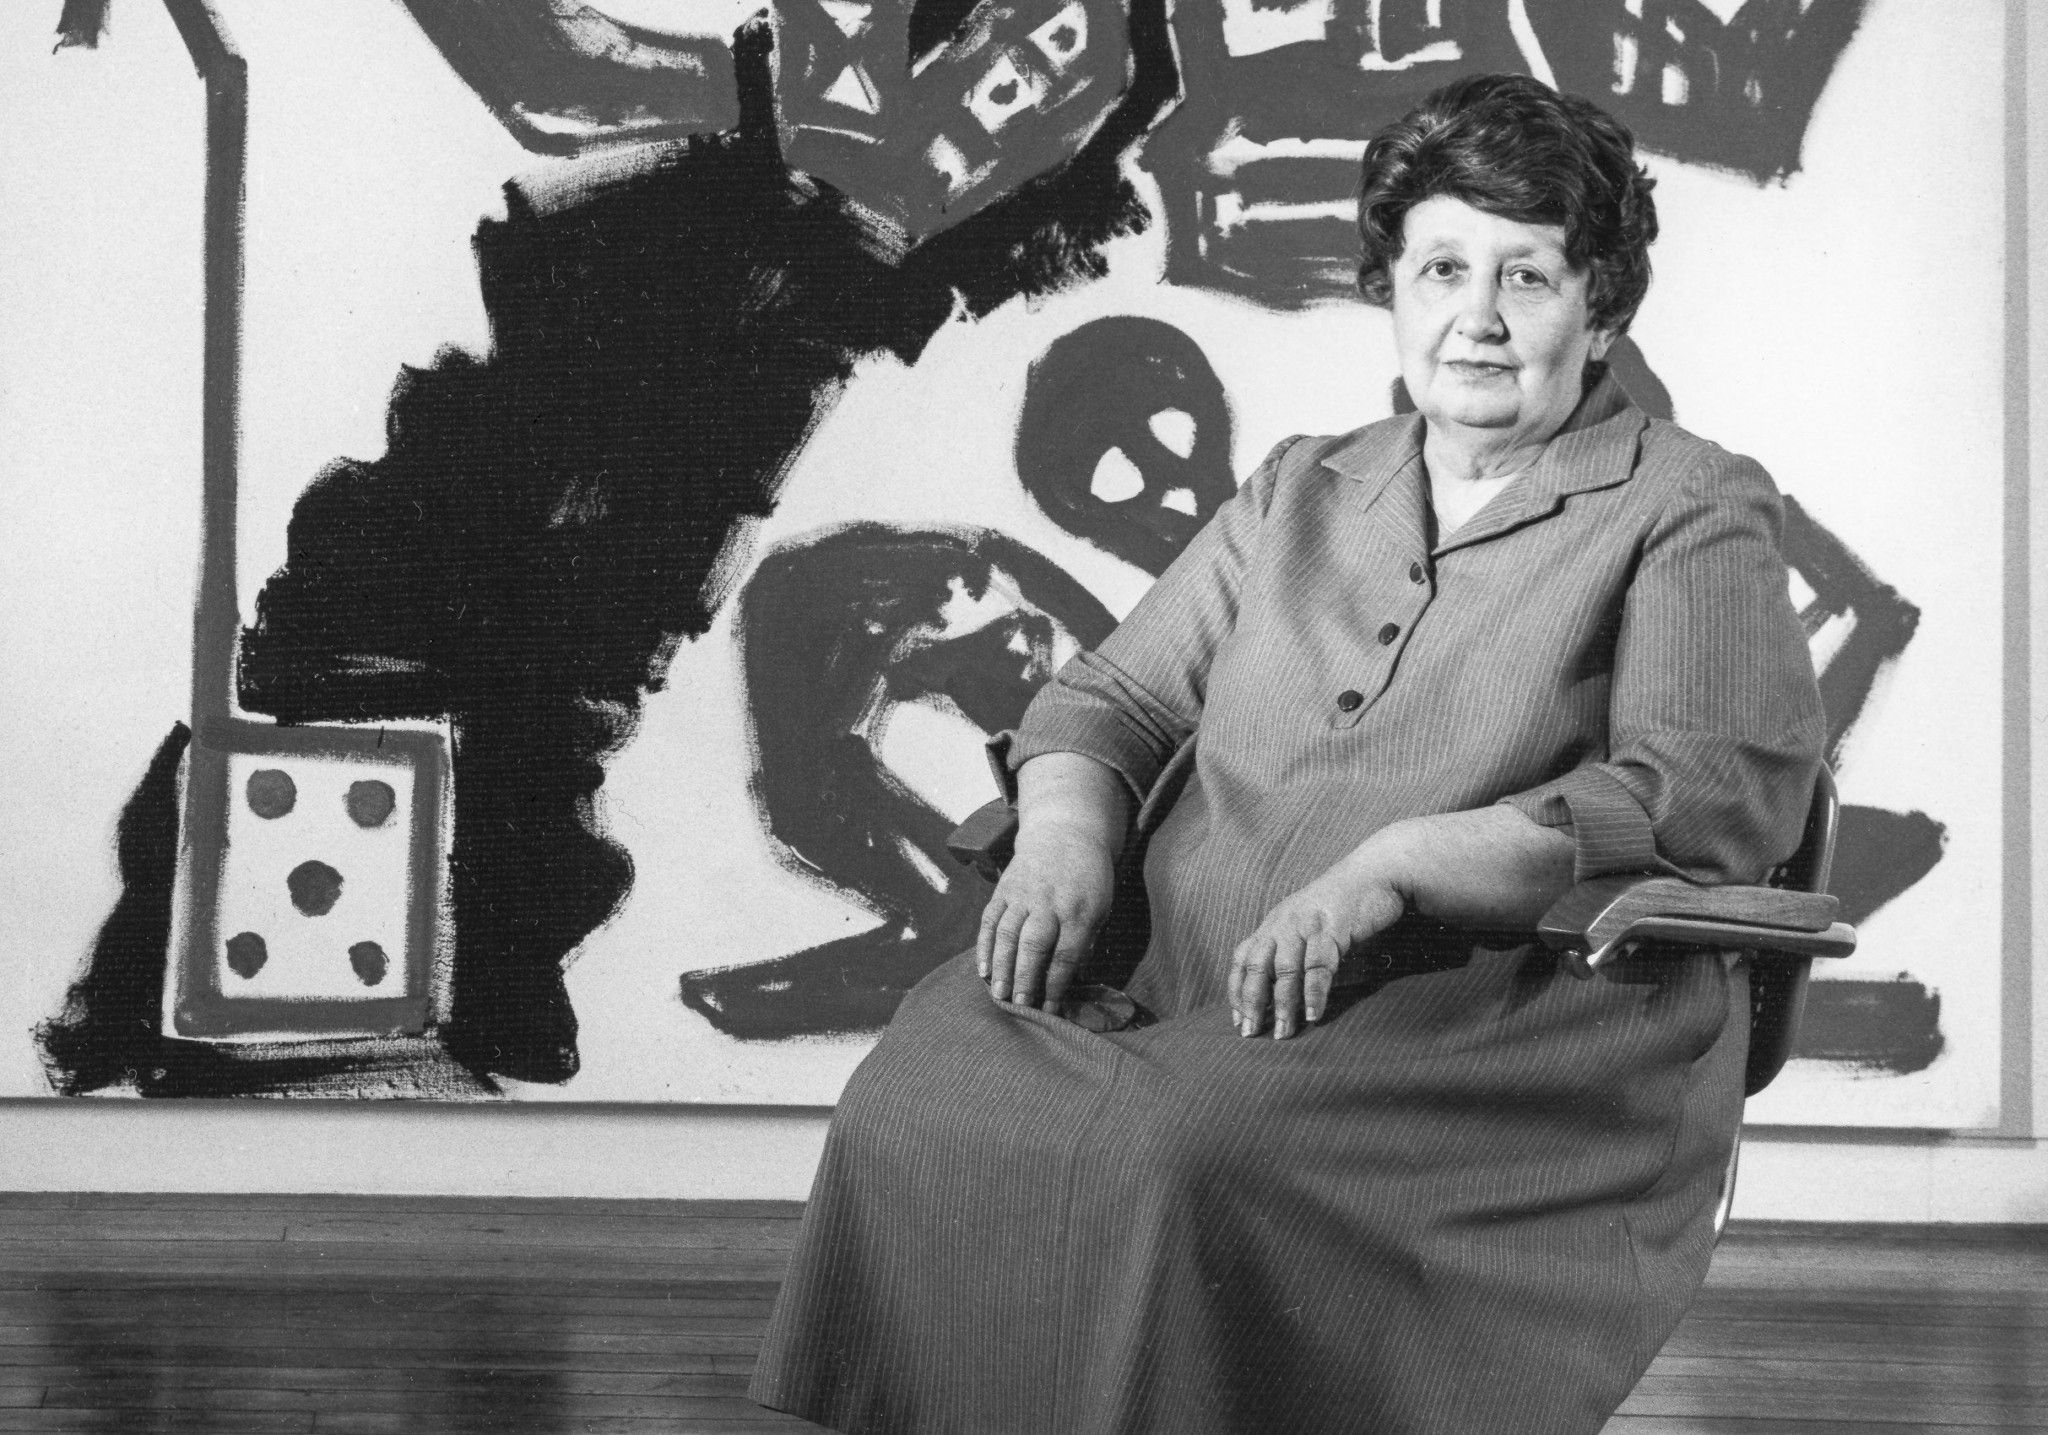 Πρωτοπόρες γυναίκες που άνοιξαν δρόμους: Ιλεάνα Σόναμπεντ, η μεγαλύτερη γκαλερίστα της Αμερικής